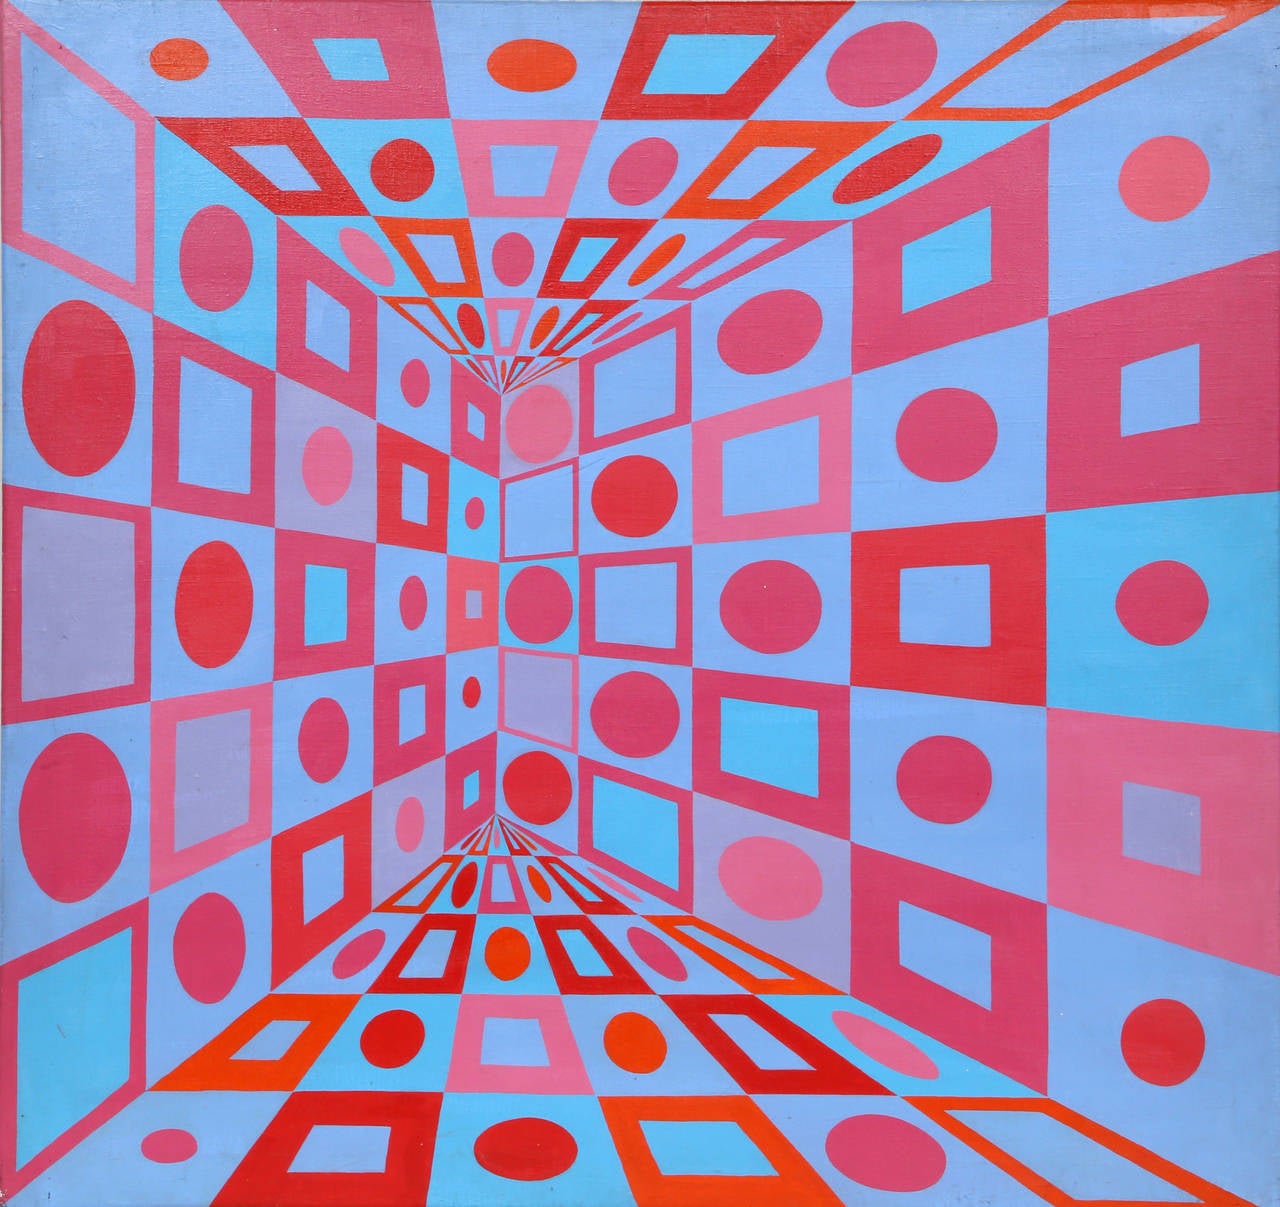 Ein Acrylgemälde von Roy Ahlgren aus der Zeit um 1970. Ein geometrisches, abstraktes Gemälde mit hellen, kontrastreichen Farbblöcken in einer modernen Form. Verso signiert, ungerahmt. 

Künstler: Roy Ahlgren, Amerikaner (1927 - 2011)
Titel: